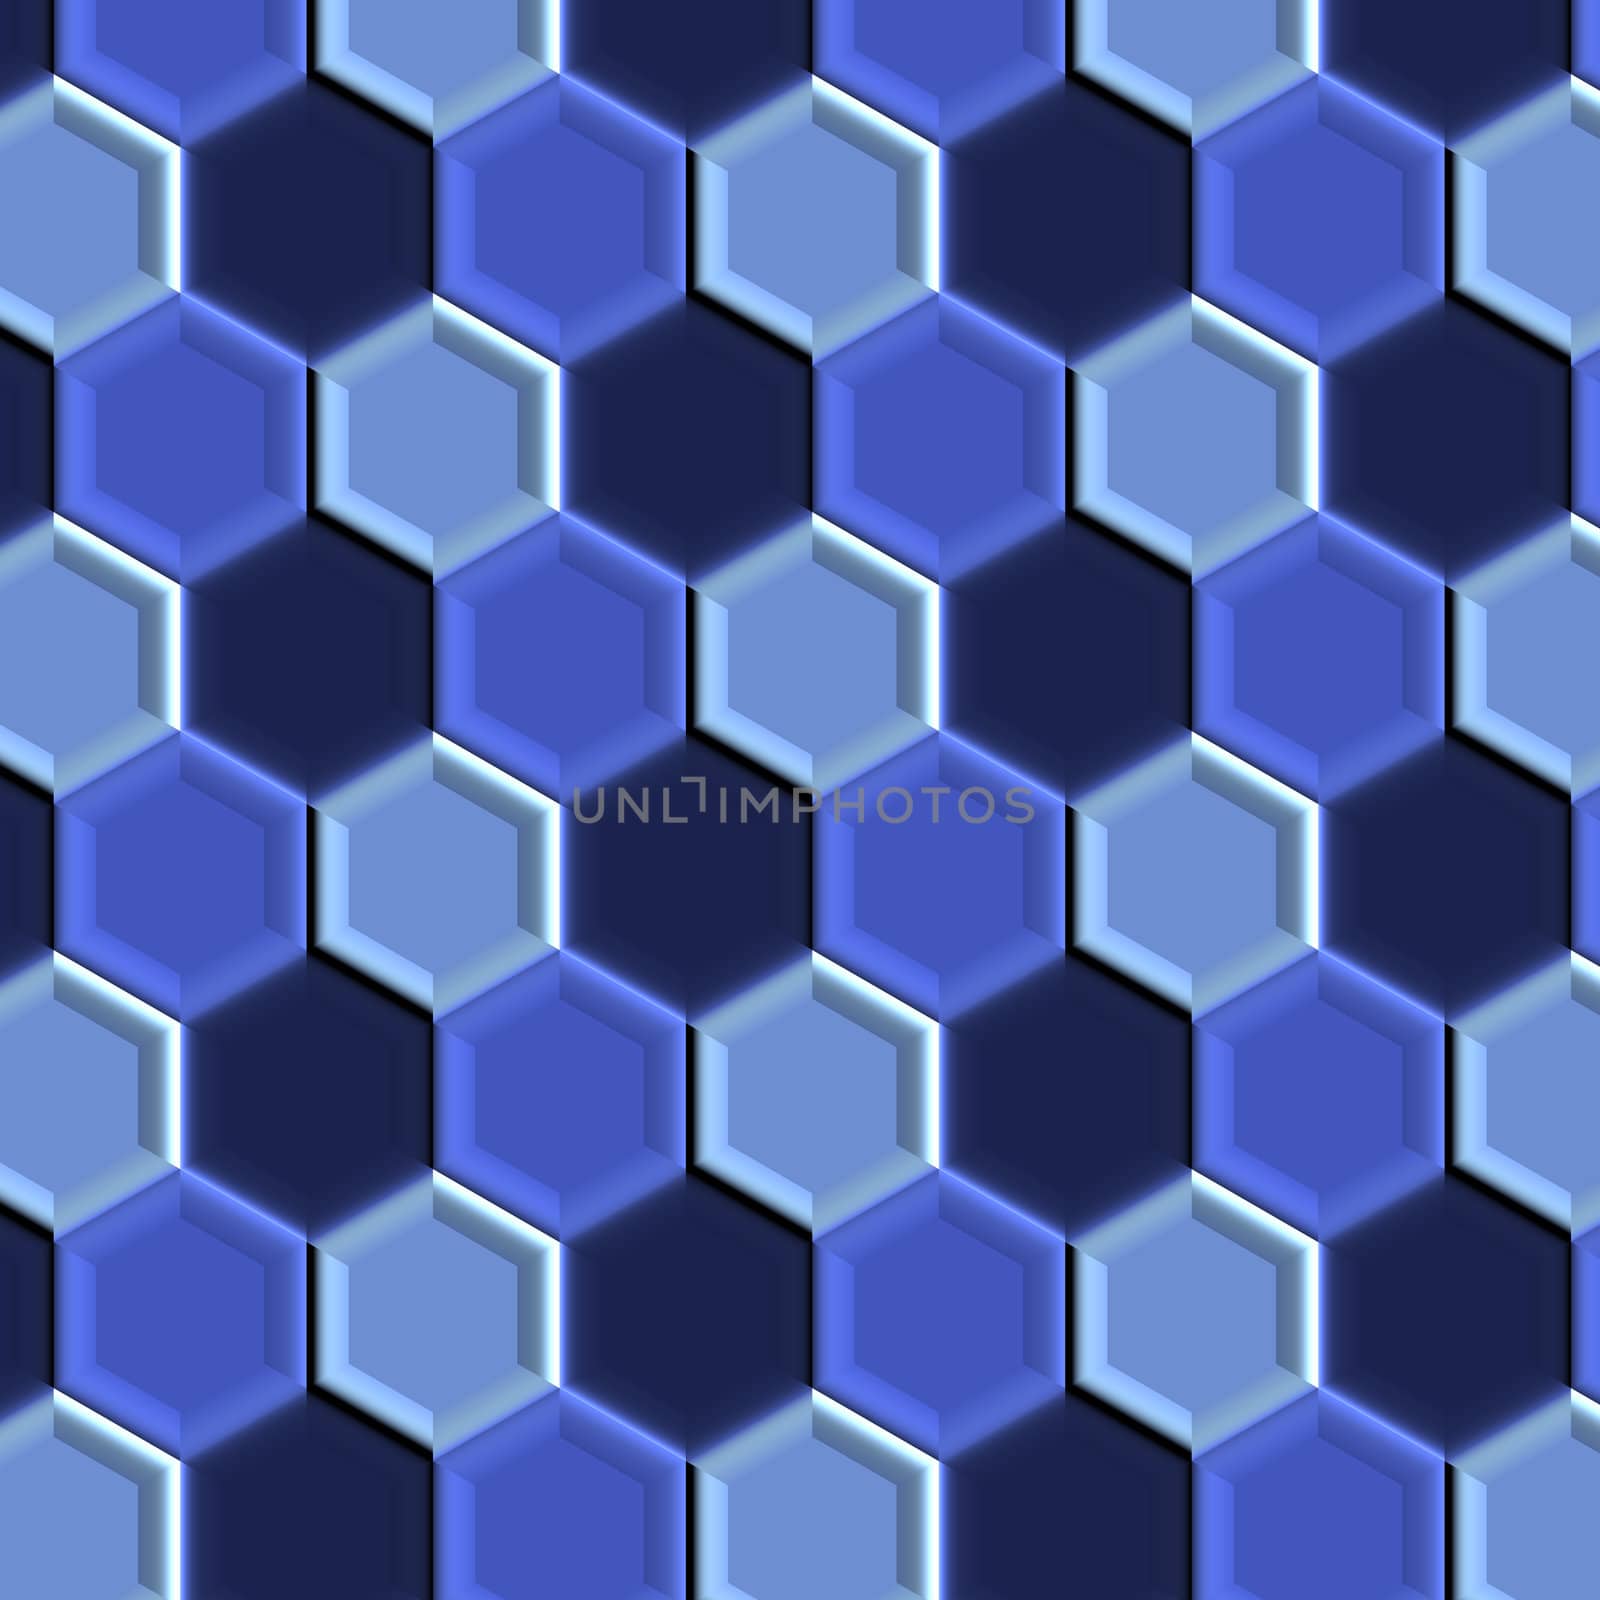 Blue Tiles by patballard